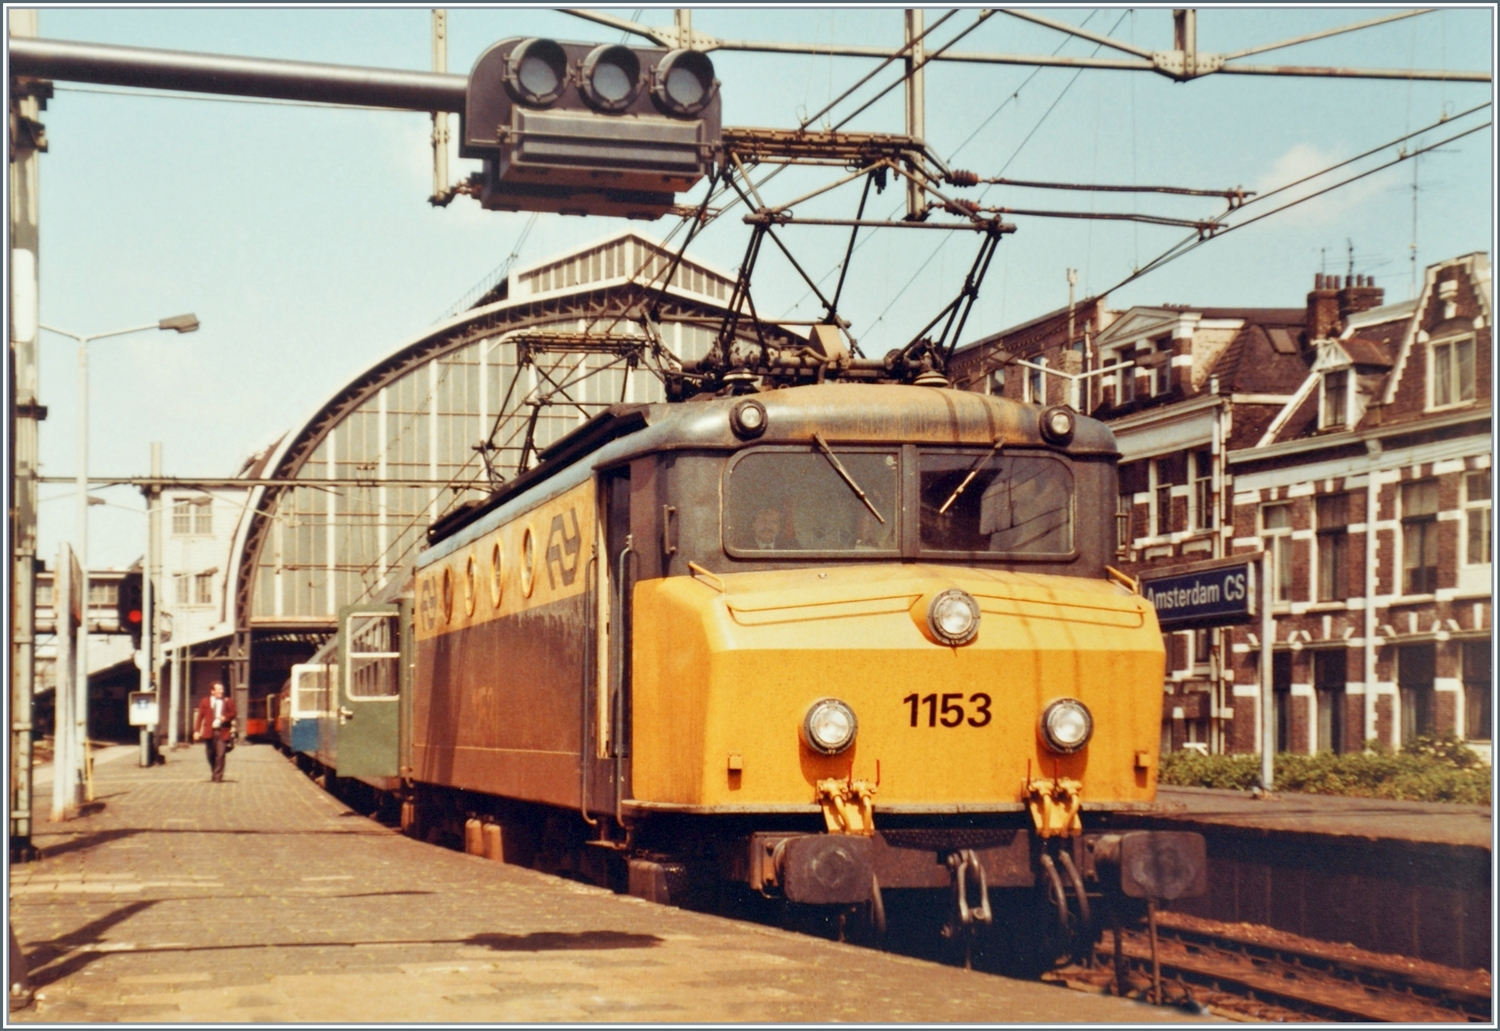 Die NS E-Lok 1153 wartet in Amsterdam CS mit einem Zugs aus DB-Wagen auf die baldige Abfahrt.

26. Juni 1984